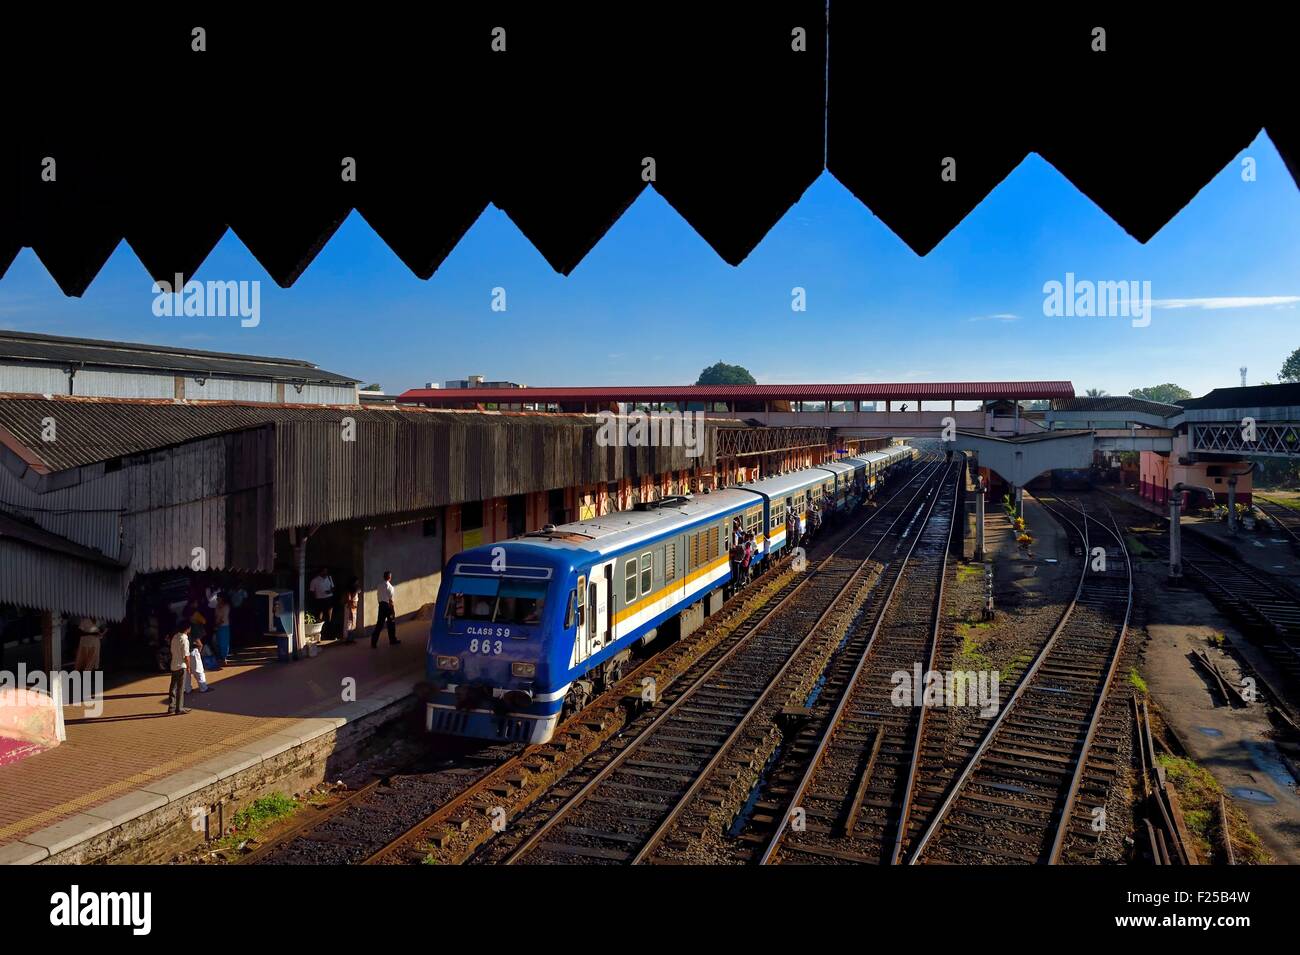 Sri Lanka, Colombo, Maradana train station Stock Photo